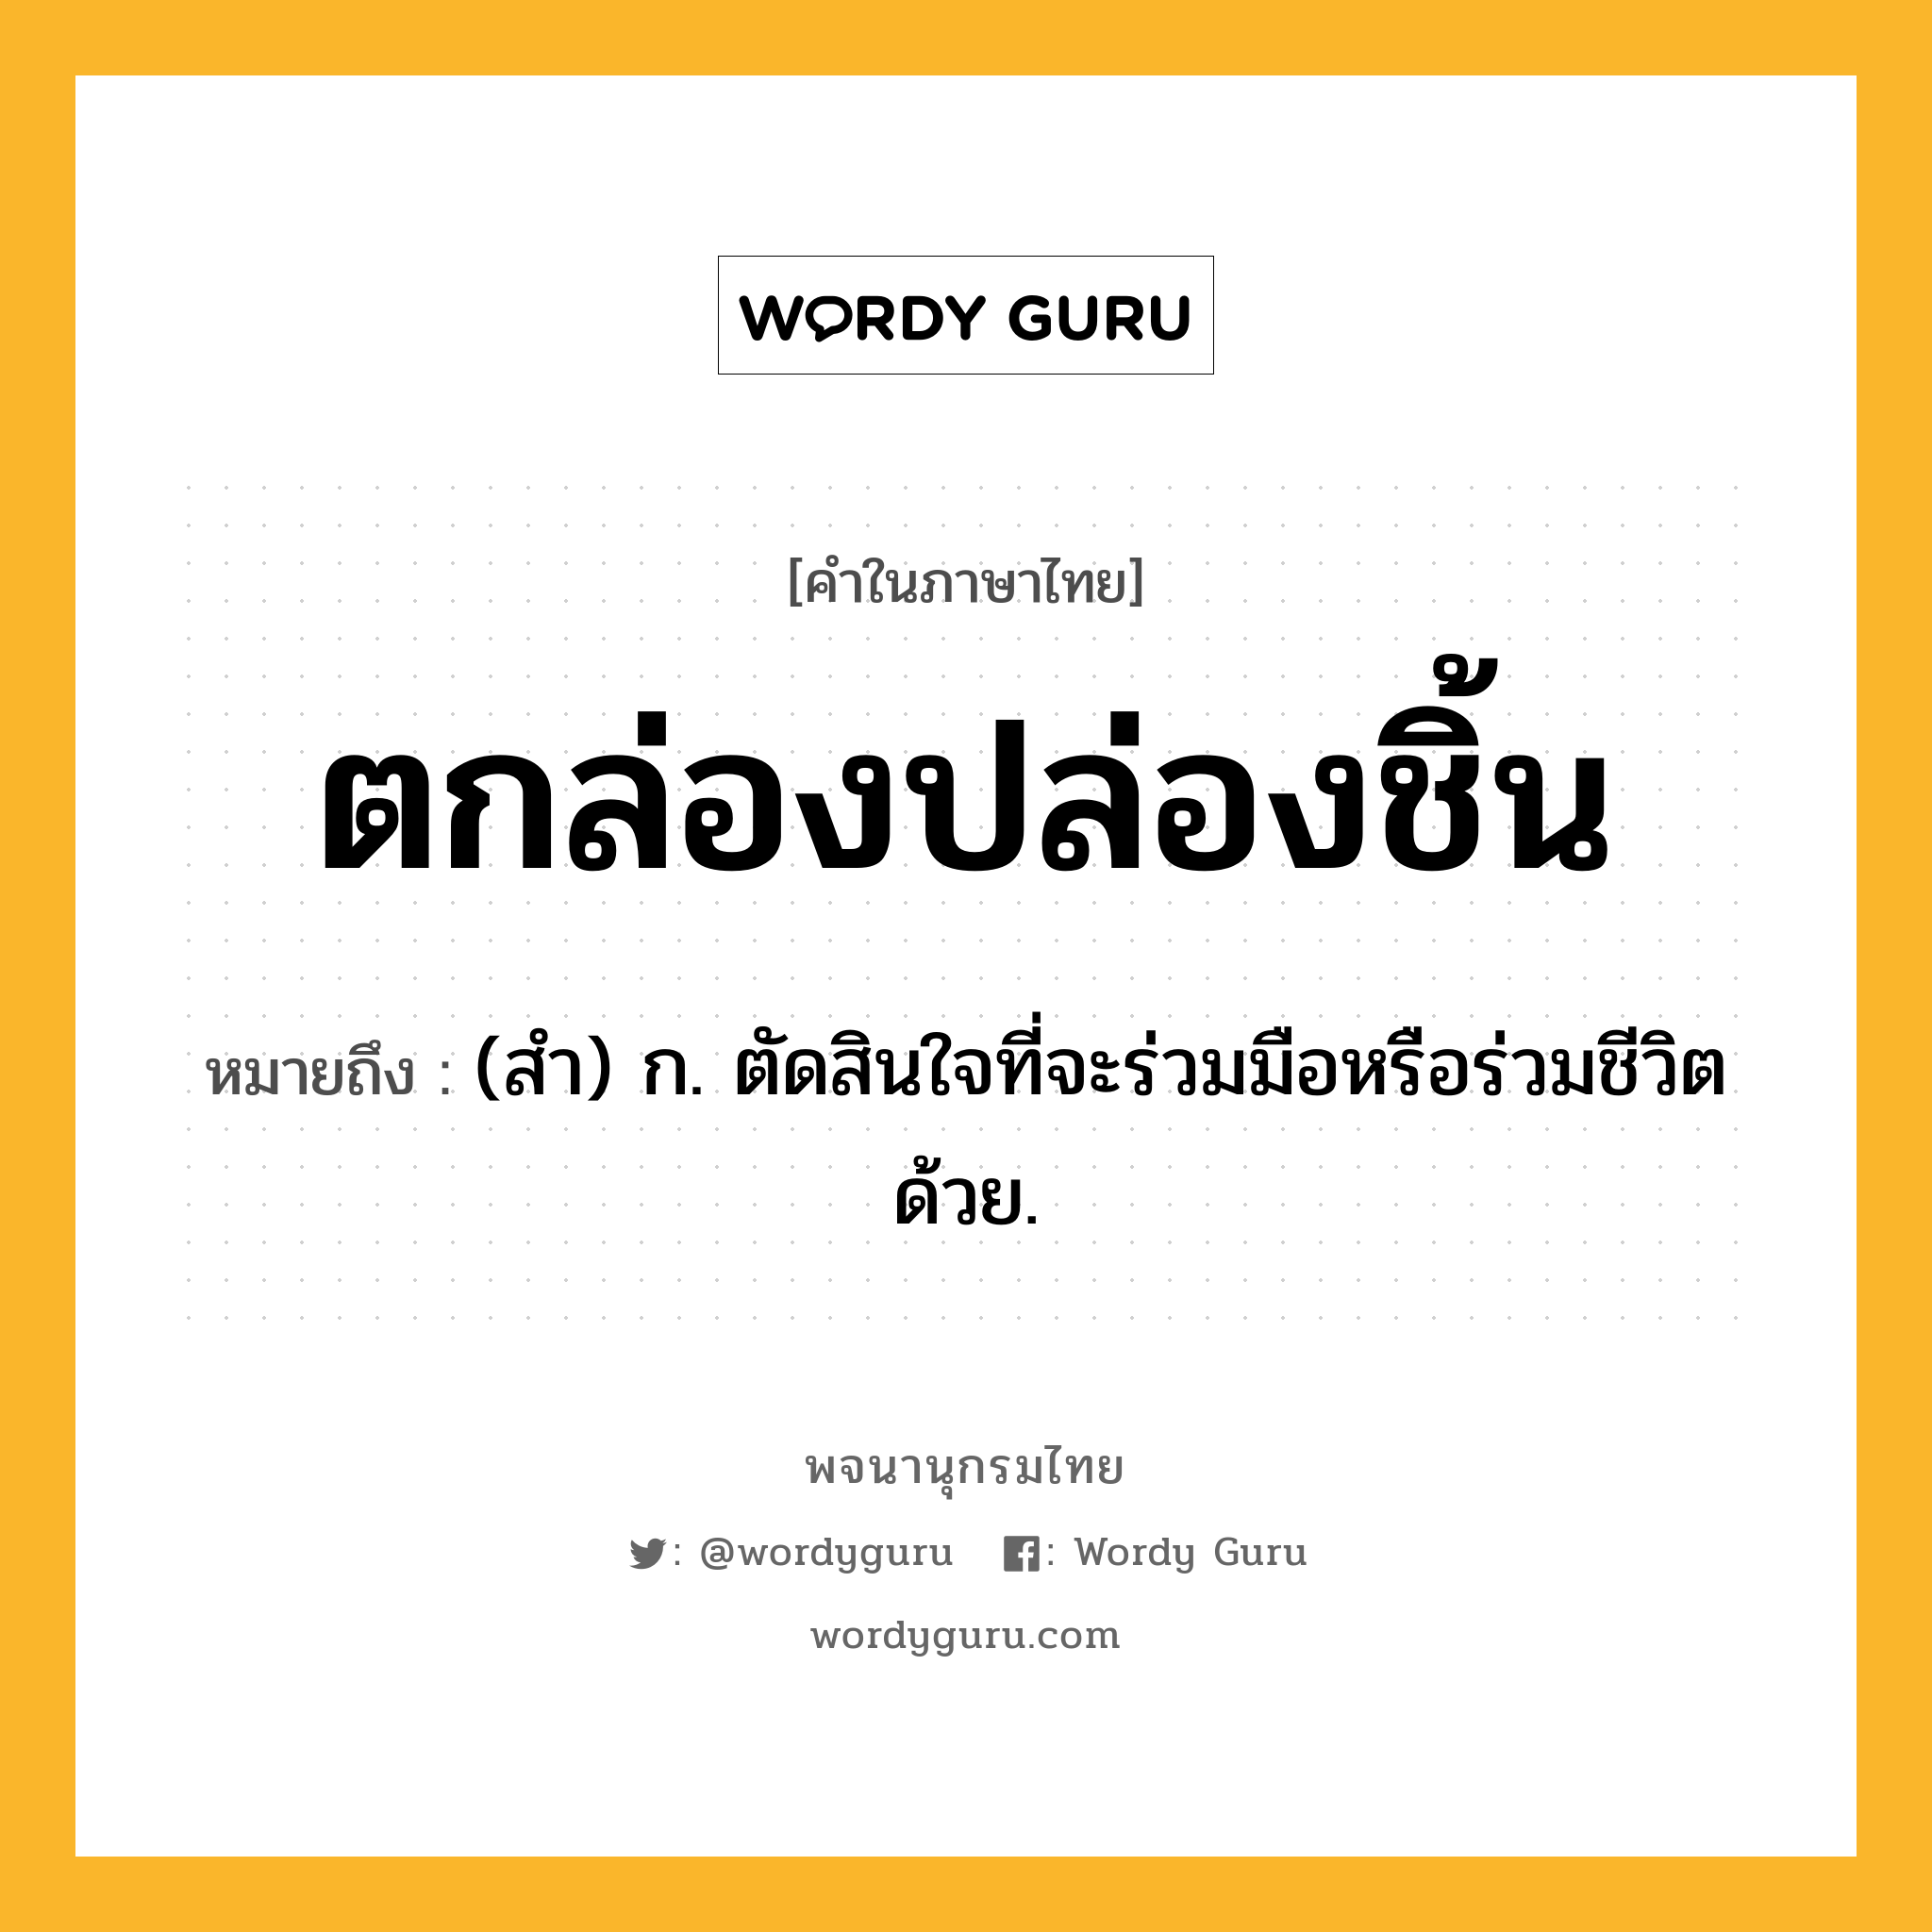 ตกล่องปล่องชิ้น หมายถึงอะไร?, คำในภาษาไทย ตกล่องปล่องชิ้น หมายถึง (สํา) ก. ตัดสินใจที่จะร่วมมือหรือร่วมชีวิตด้วย.